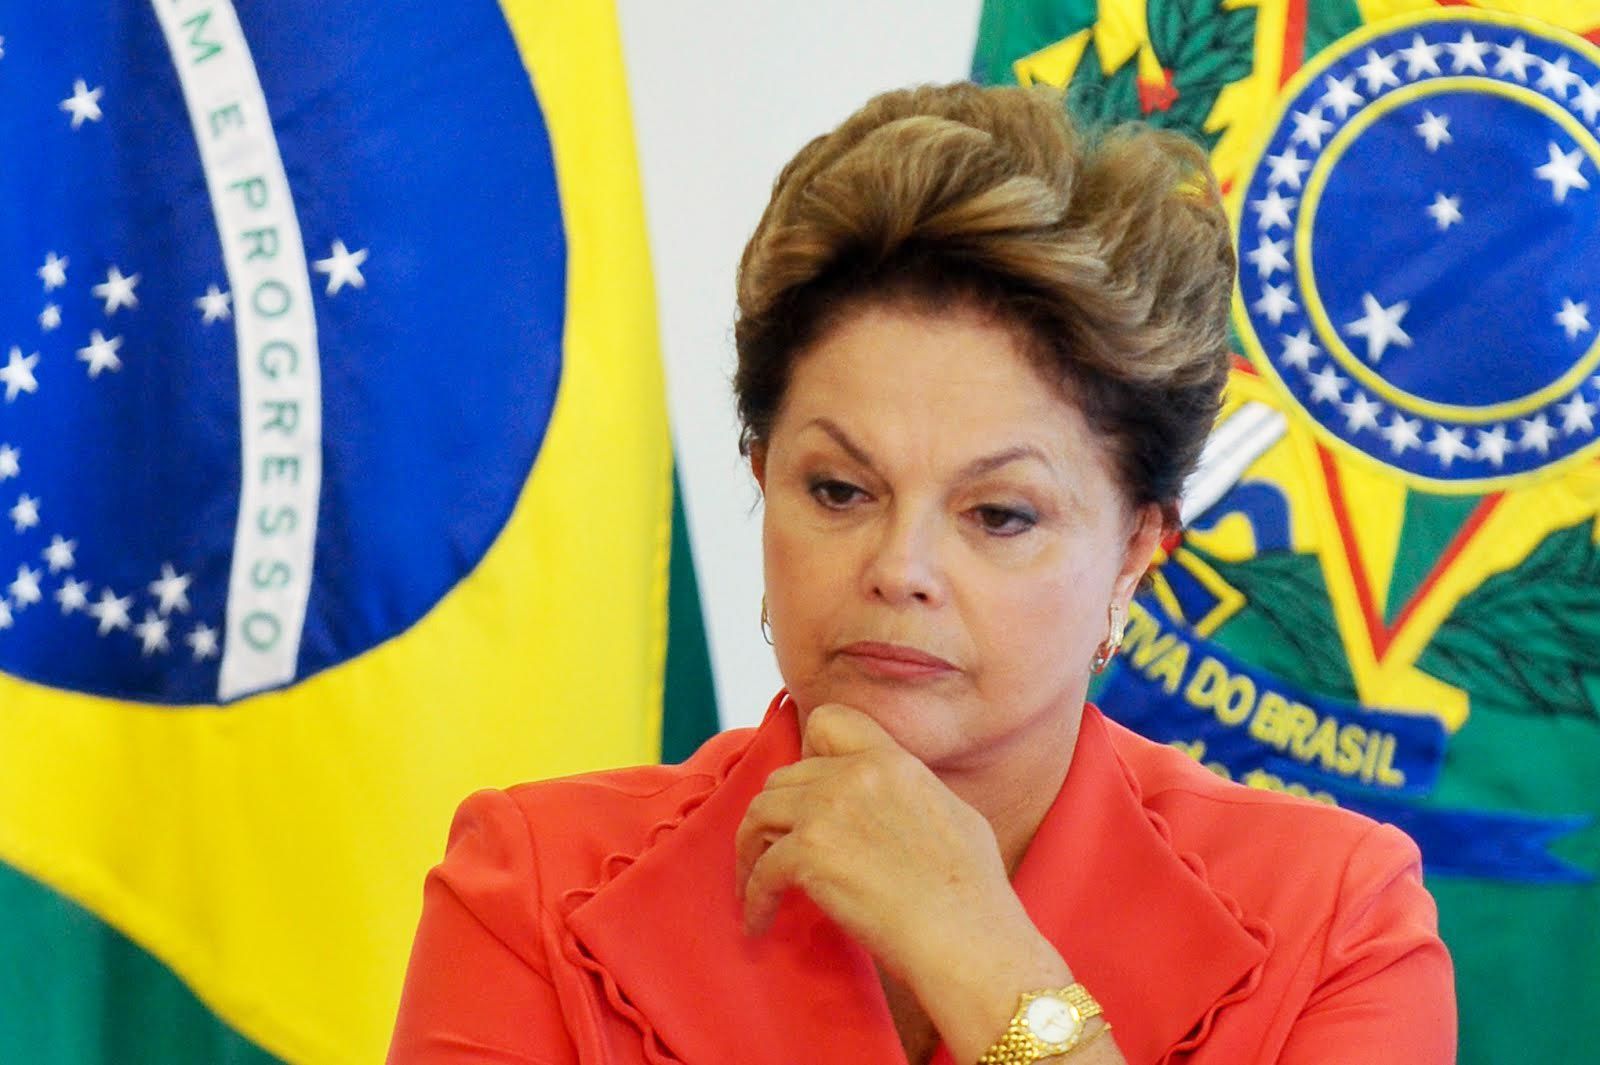 Juicio a Rousseff crea nuevos interrogantes olímpicos